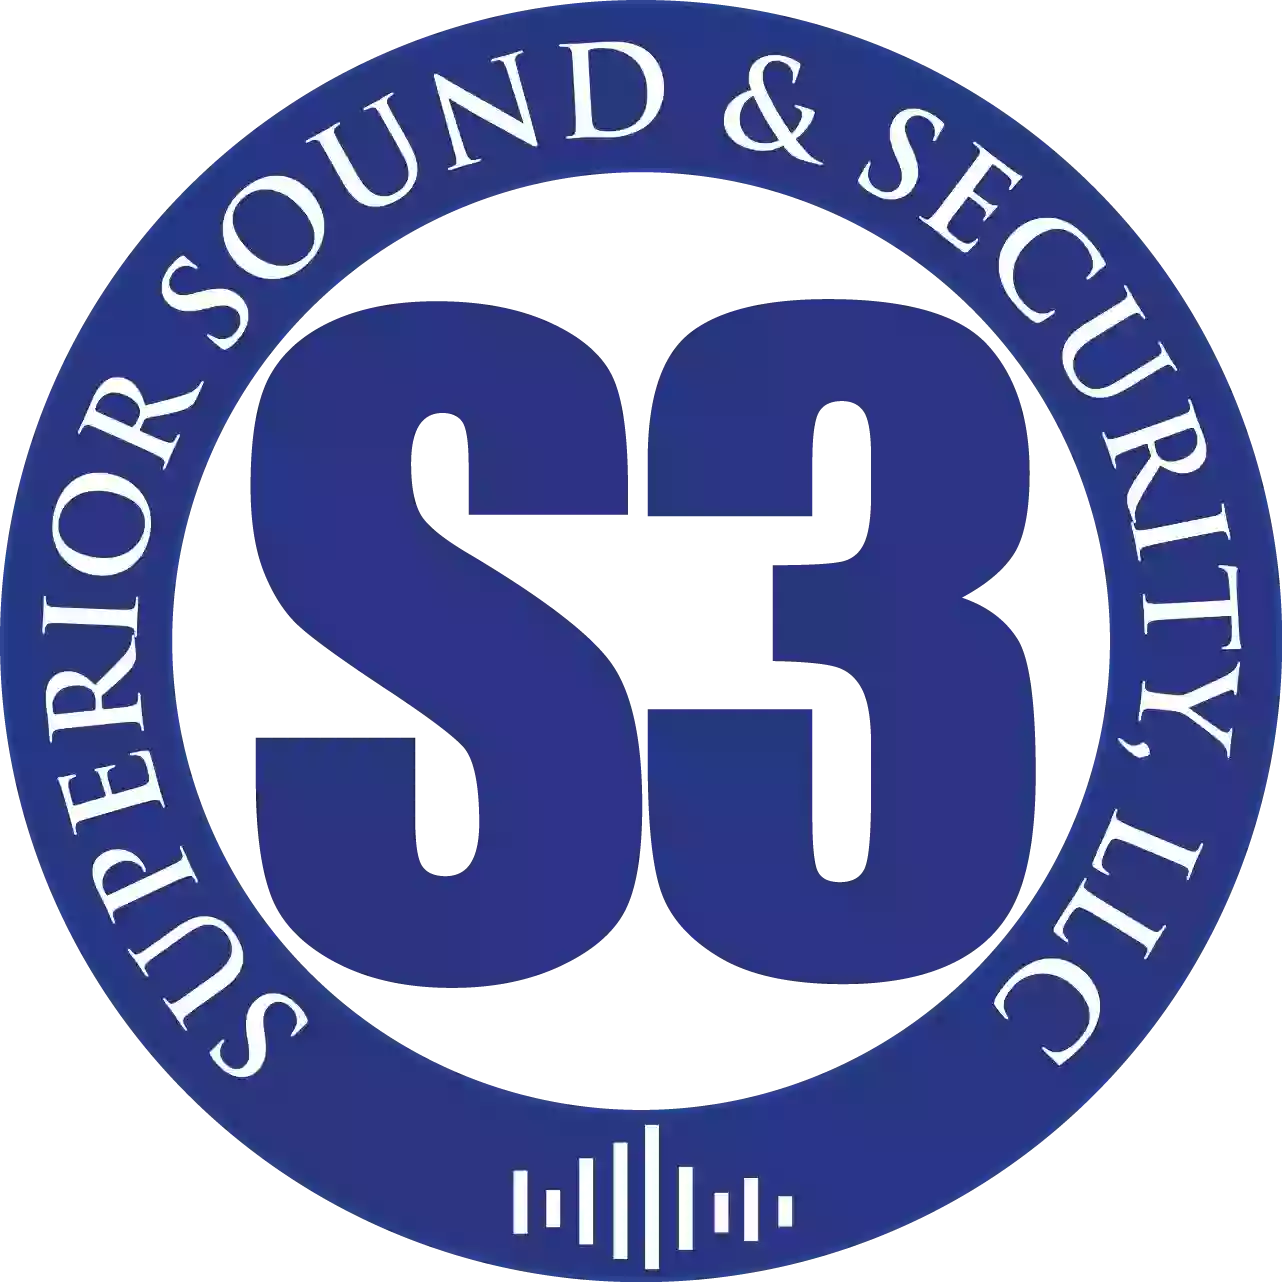 Superior Sound & Security